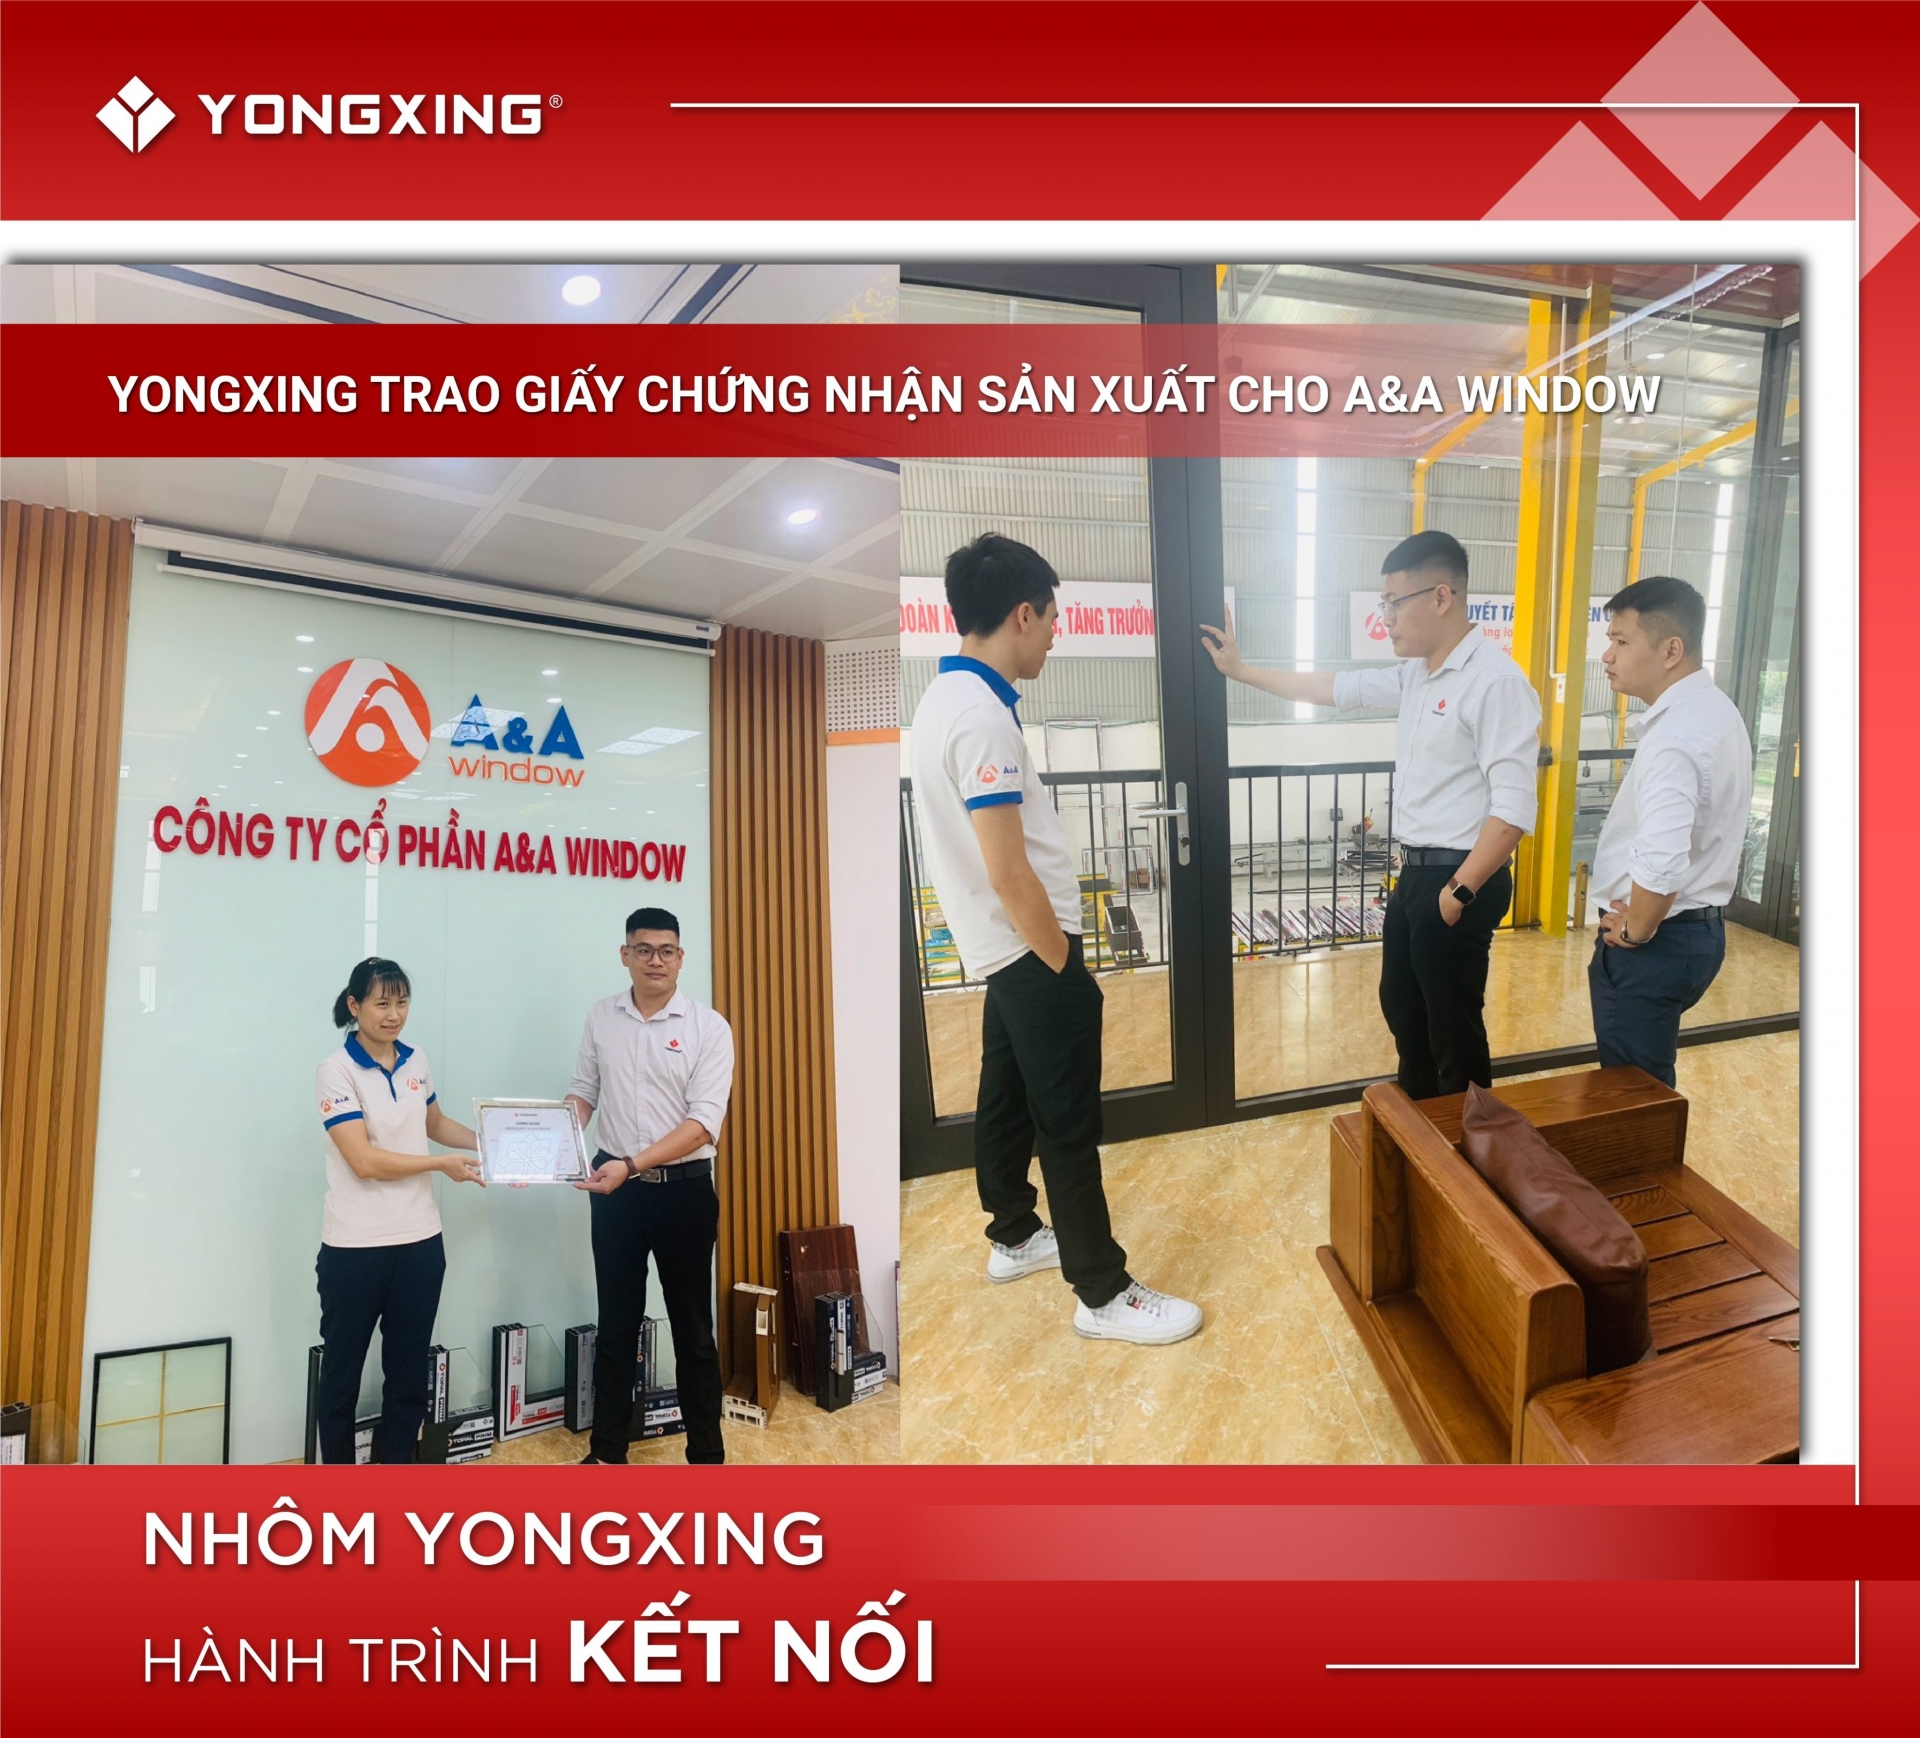 Nhôm Yongxing trao giấy chứng nhận sản xuất cho A&A Window